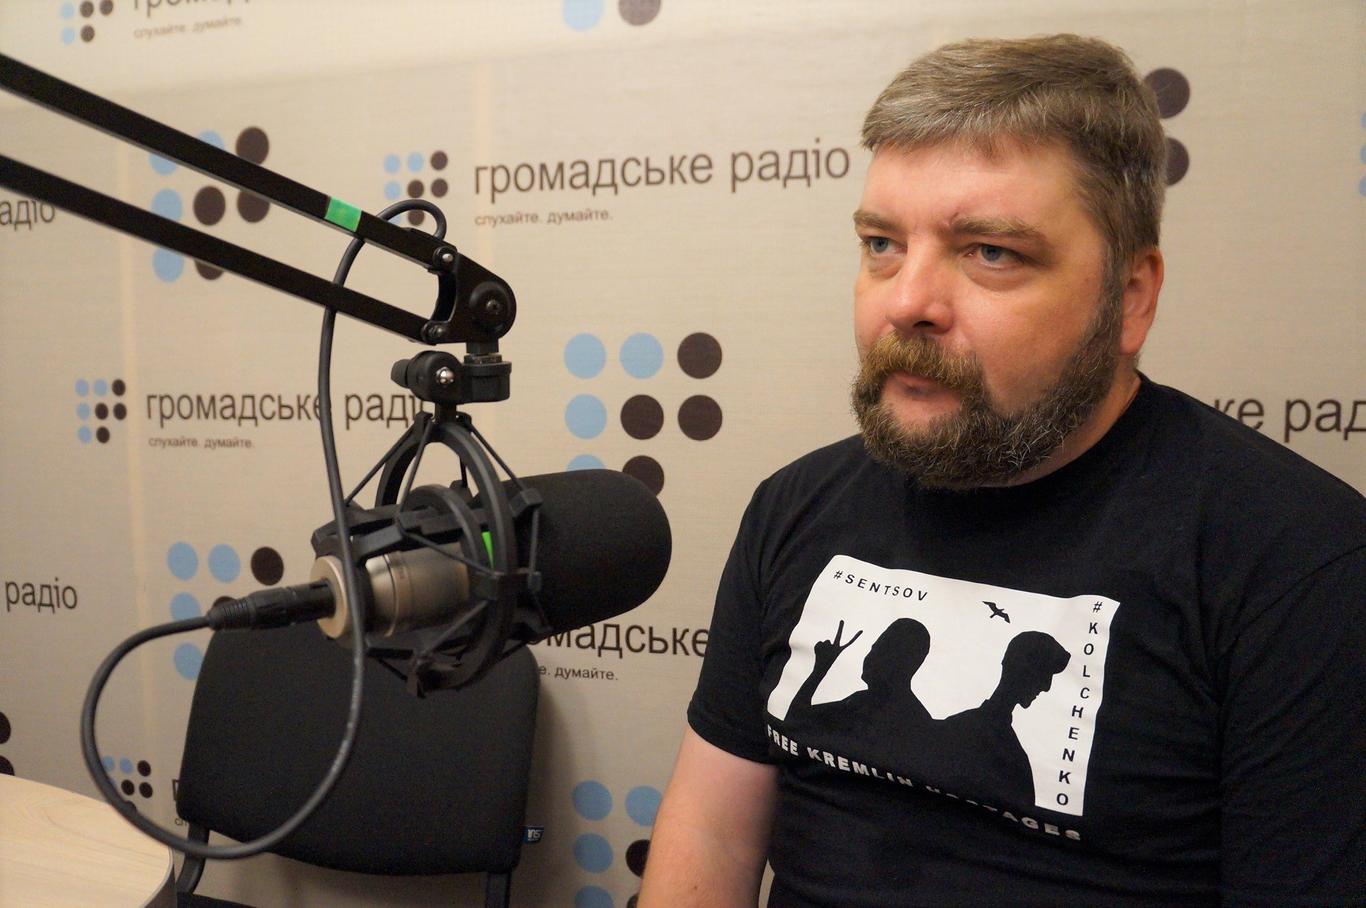 Максим Буткевич тоді перебував на Київщині, а не в Сєвєродонецьку, як стверджують у «суді» — адвокат Леонід Соловйов